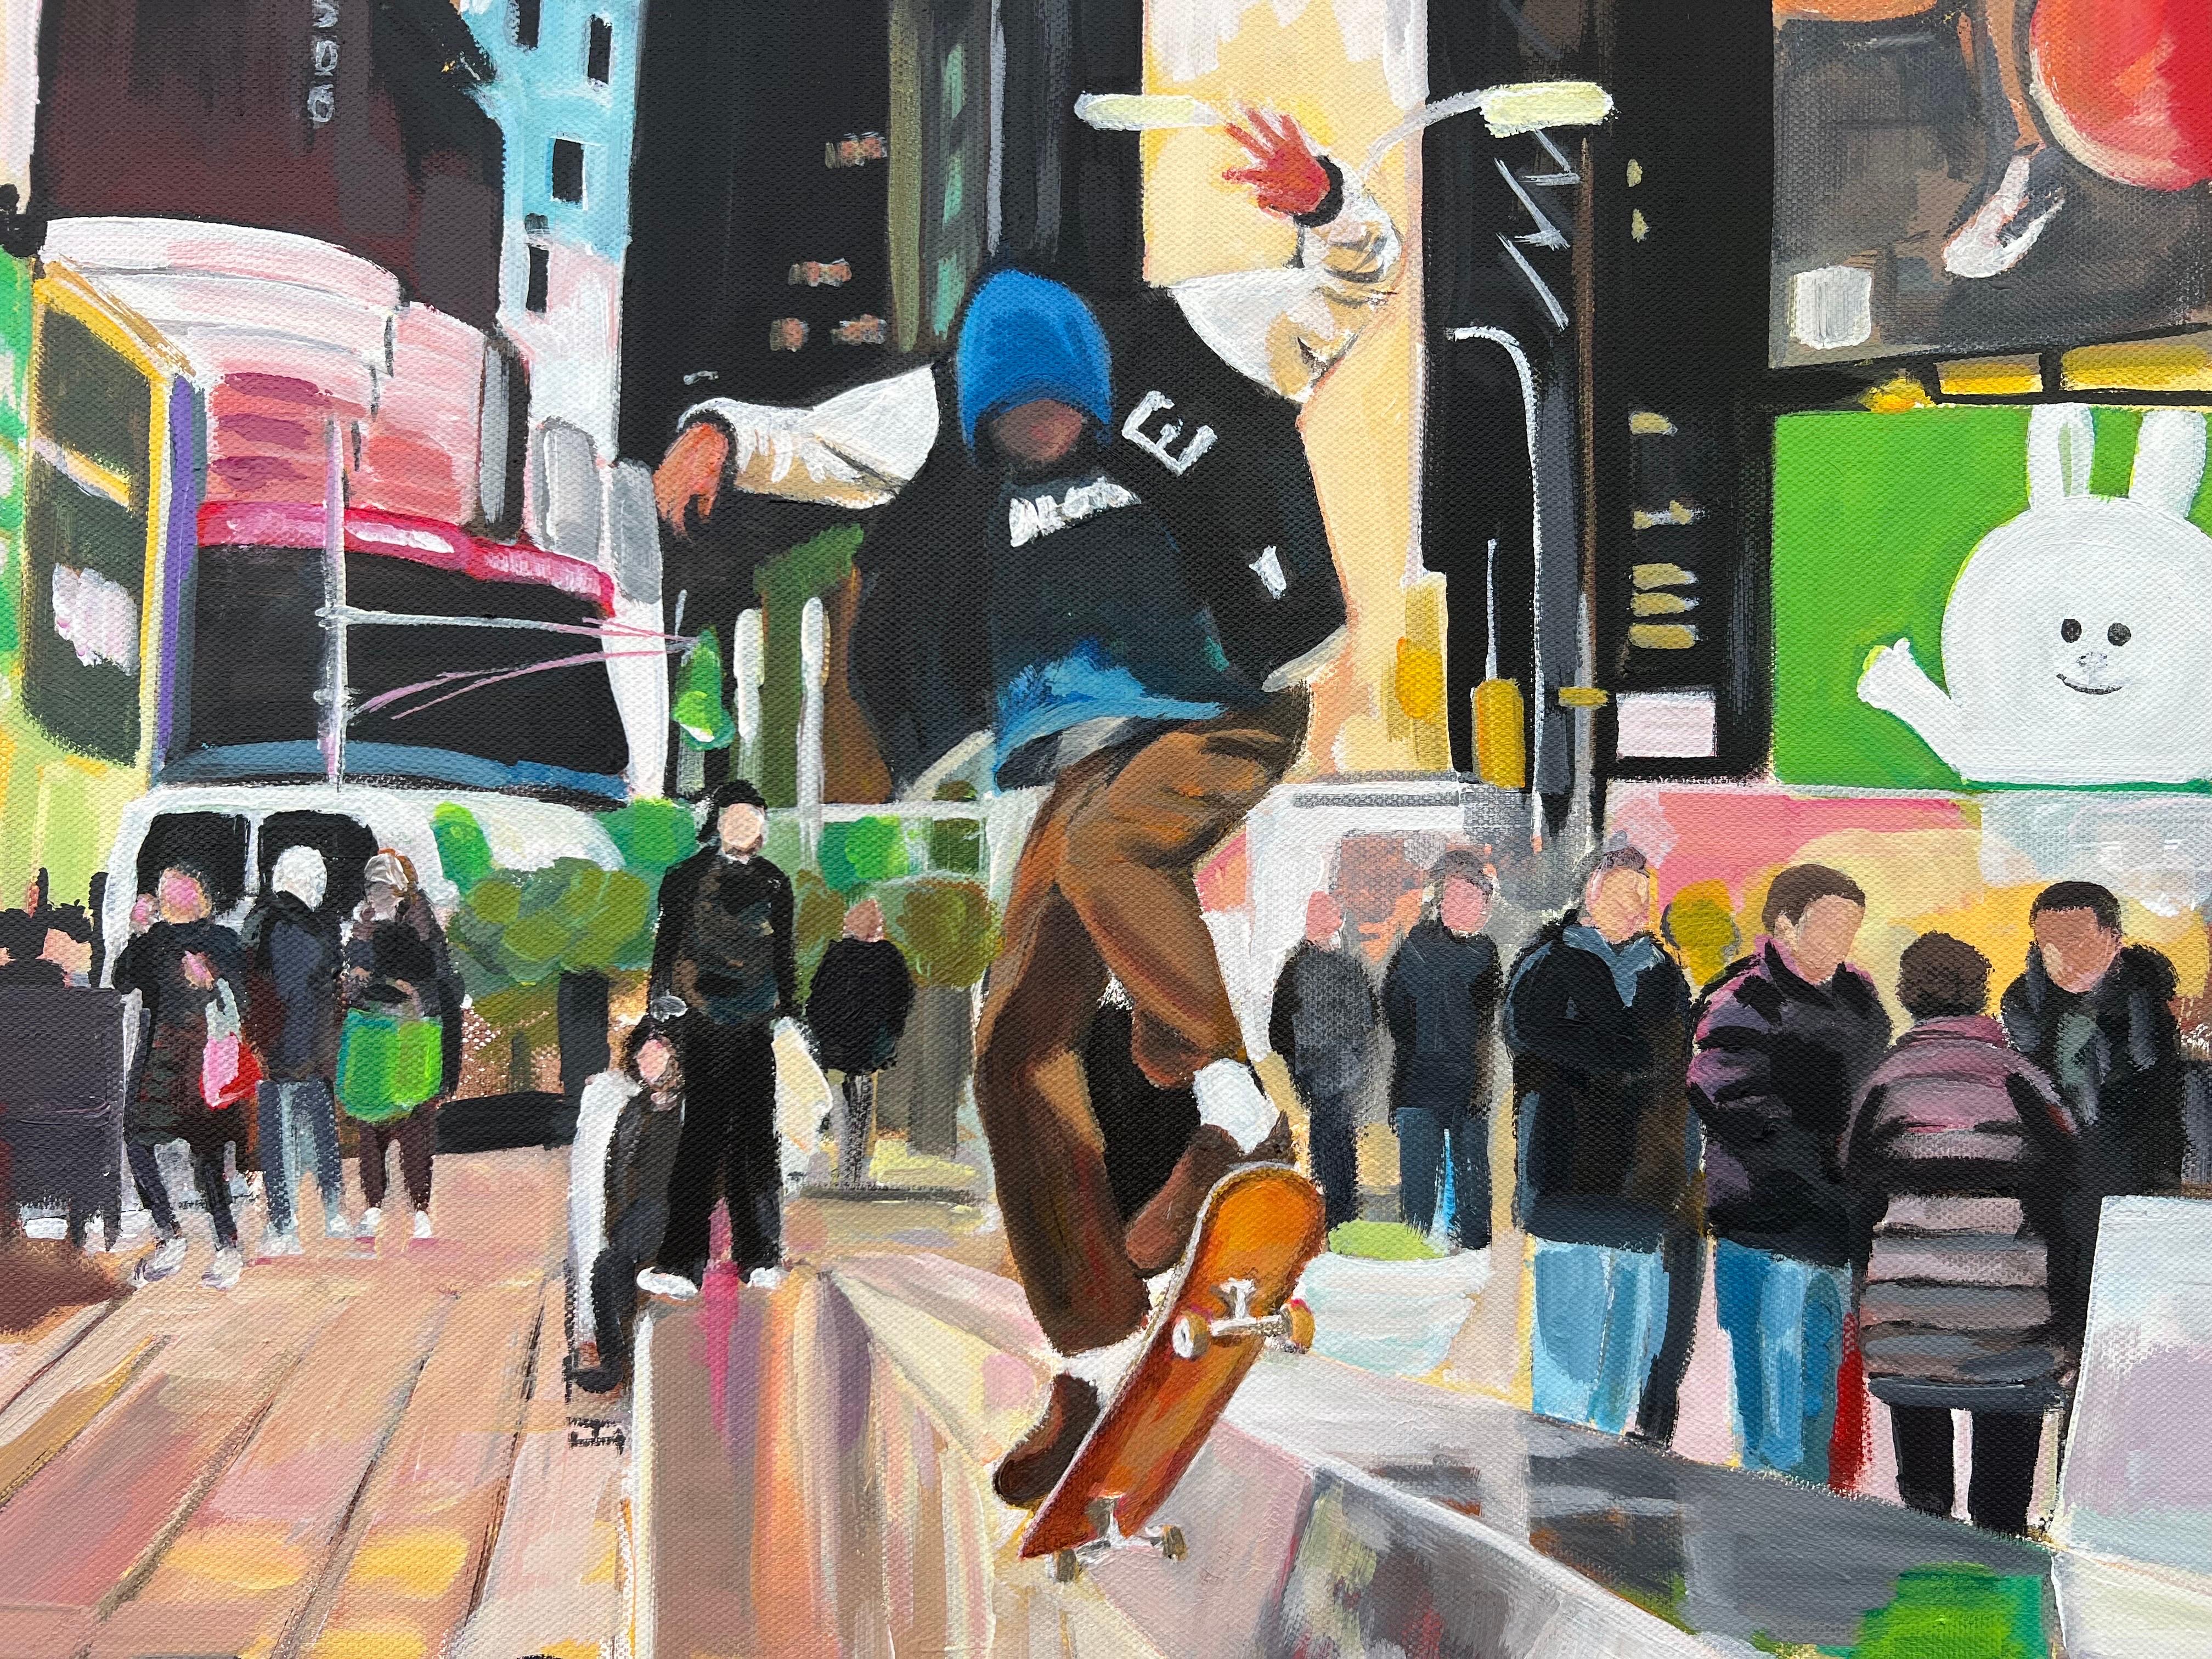 Skate Boarder Times Square New York City après la pluie d'un artiste urbain britannique - Contemporain Painting par Angela Wakefield